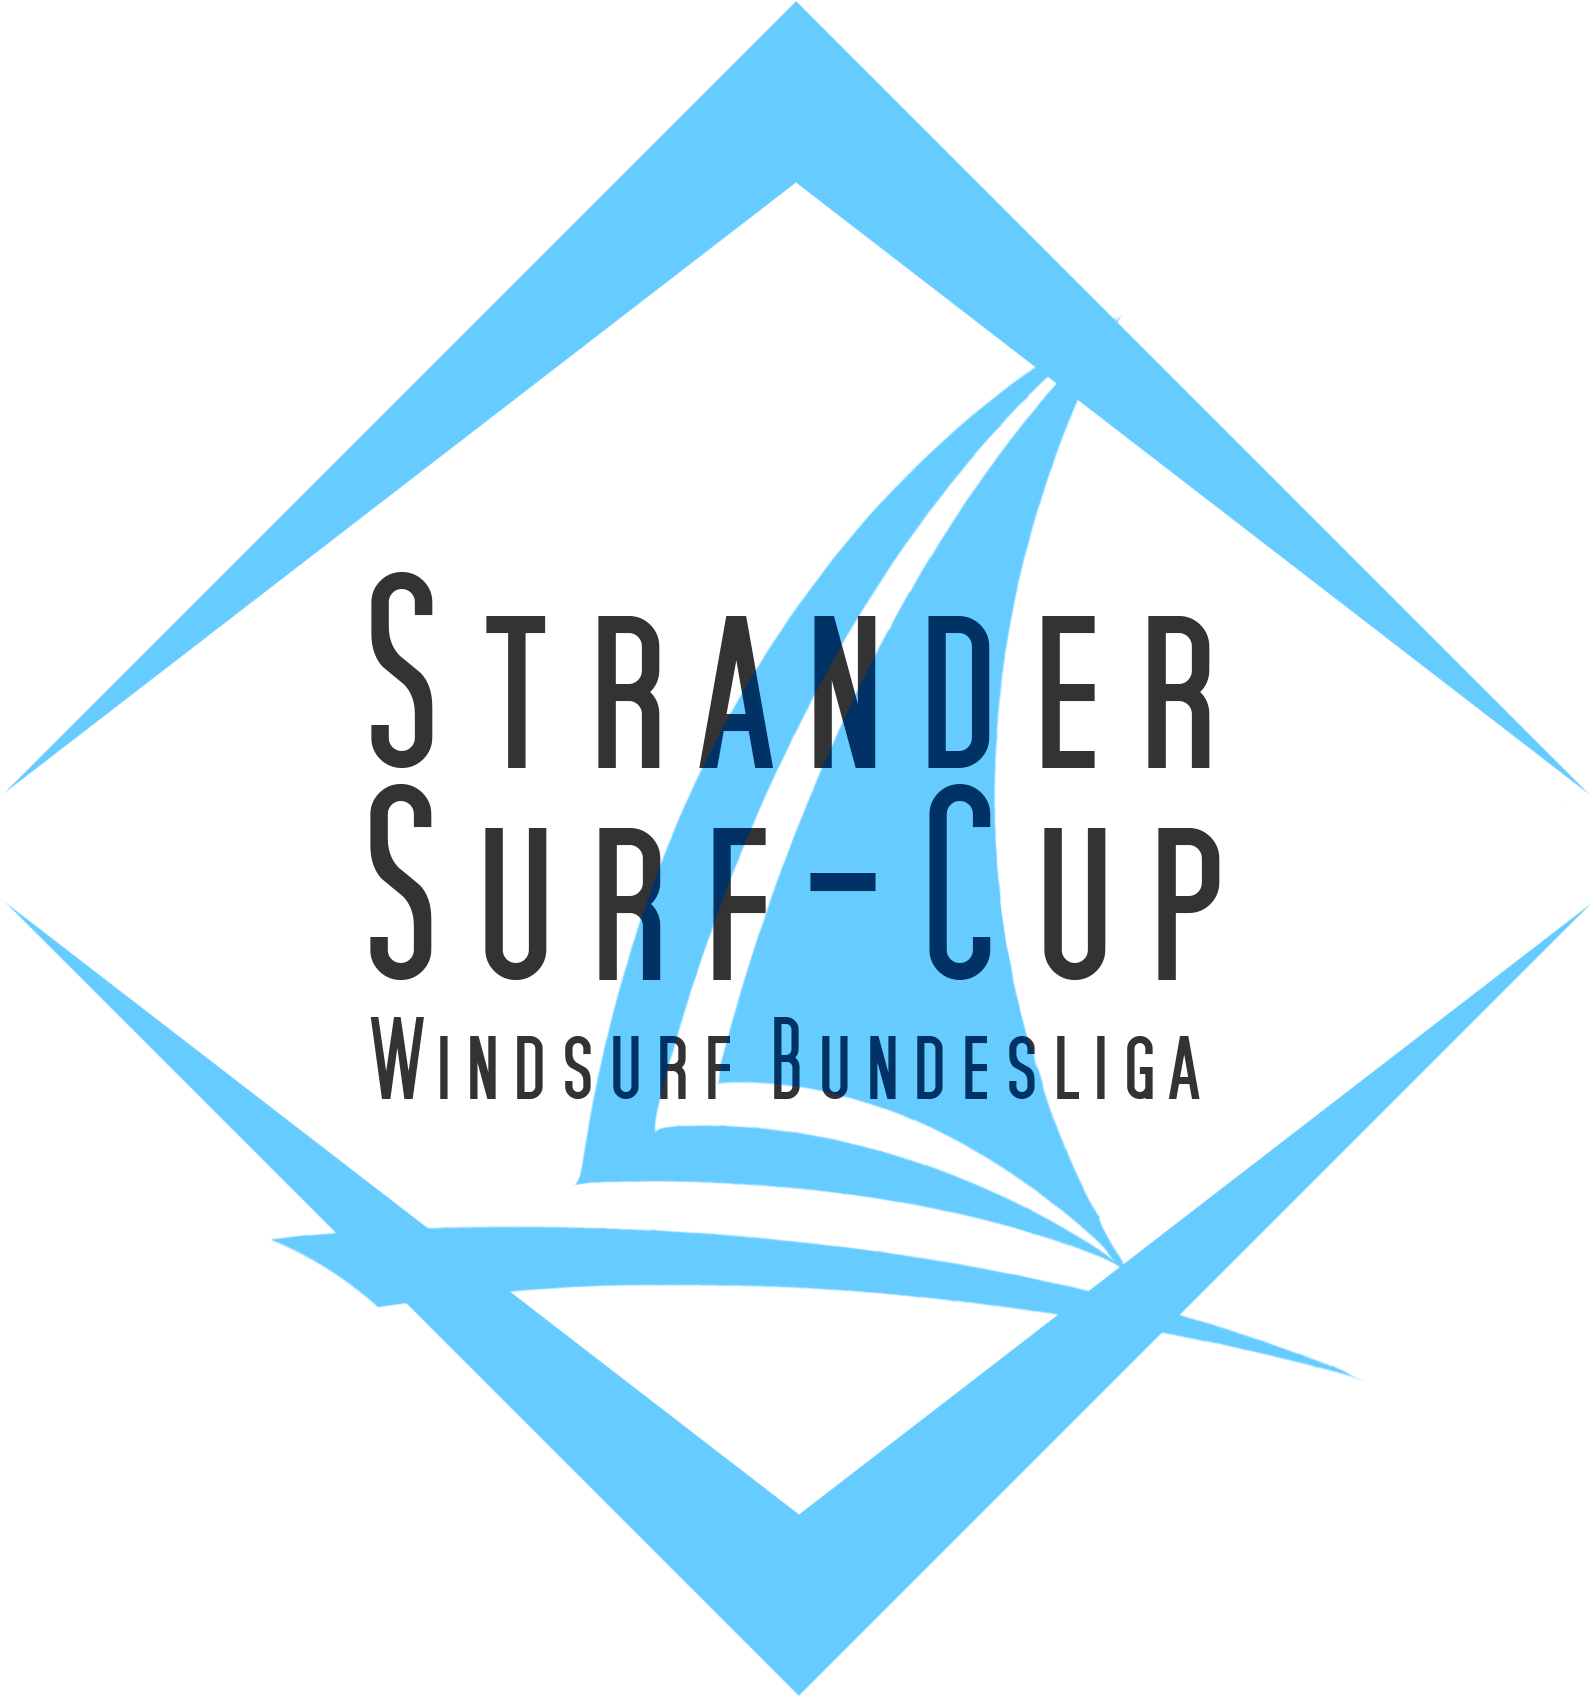 Strander Surf-Cup